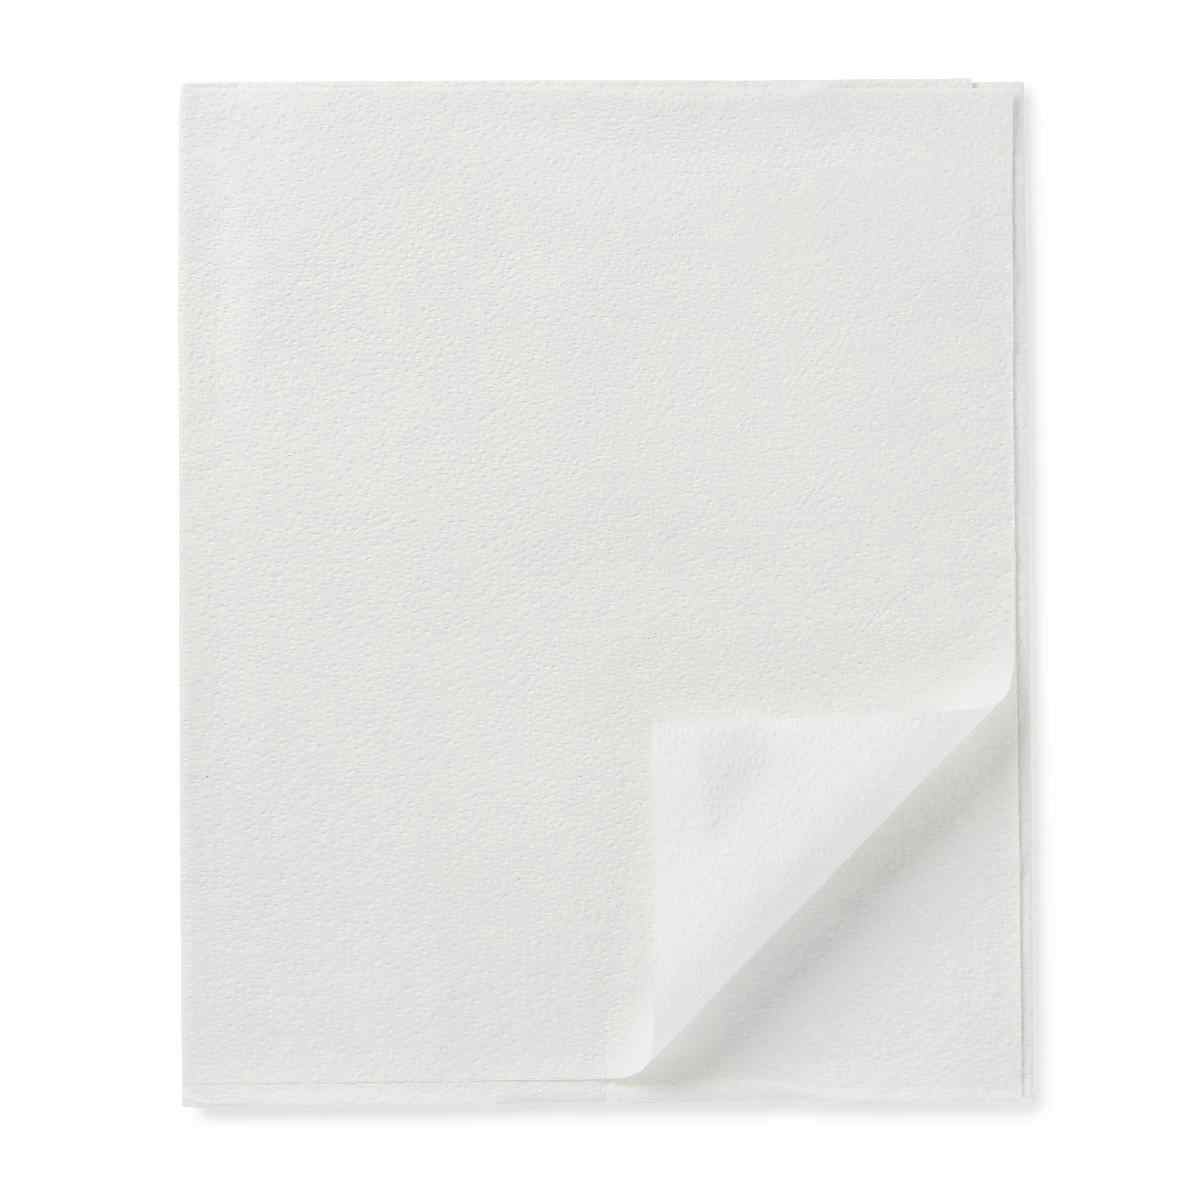 Medline Deluxe 2-Ply Tissue Drape Sheets